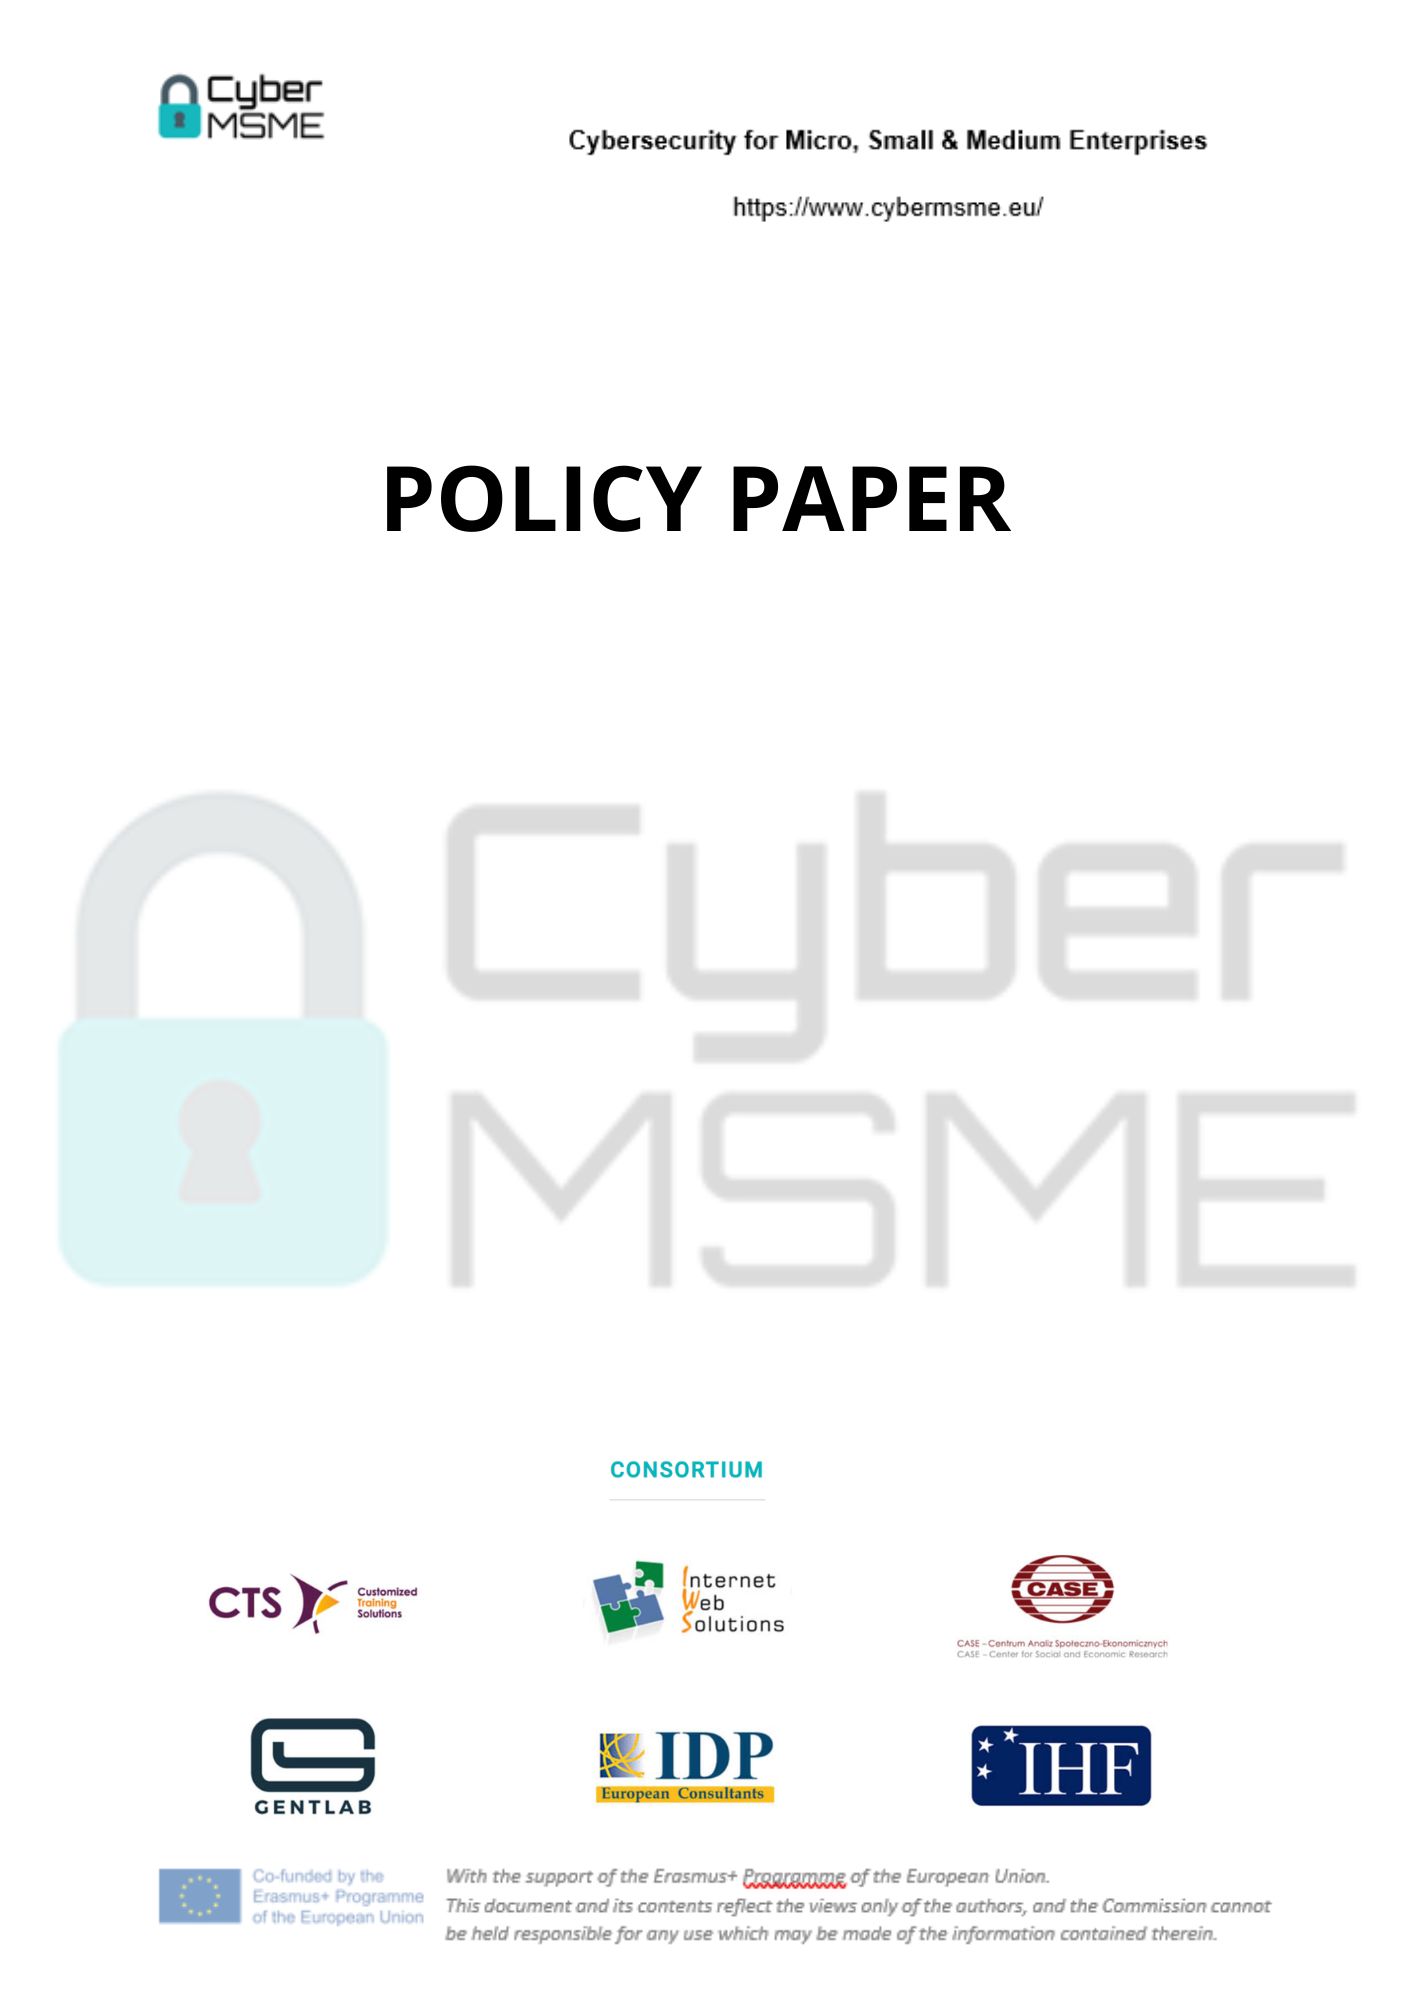 Recomendación política para la preparación cibernética de las pequeñas empresas y microempresas de la UE: